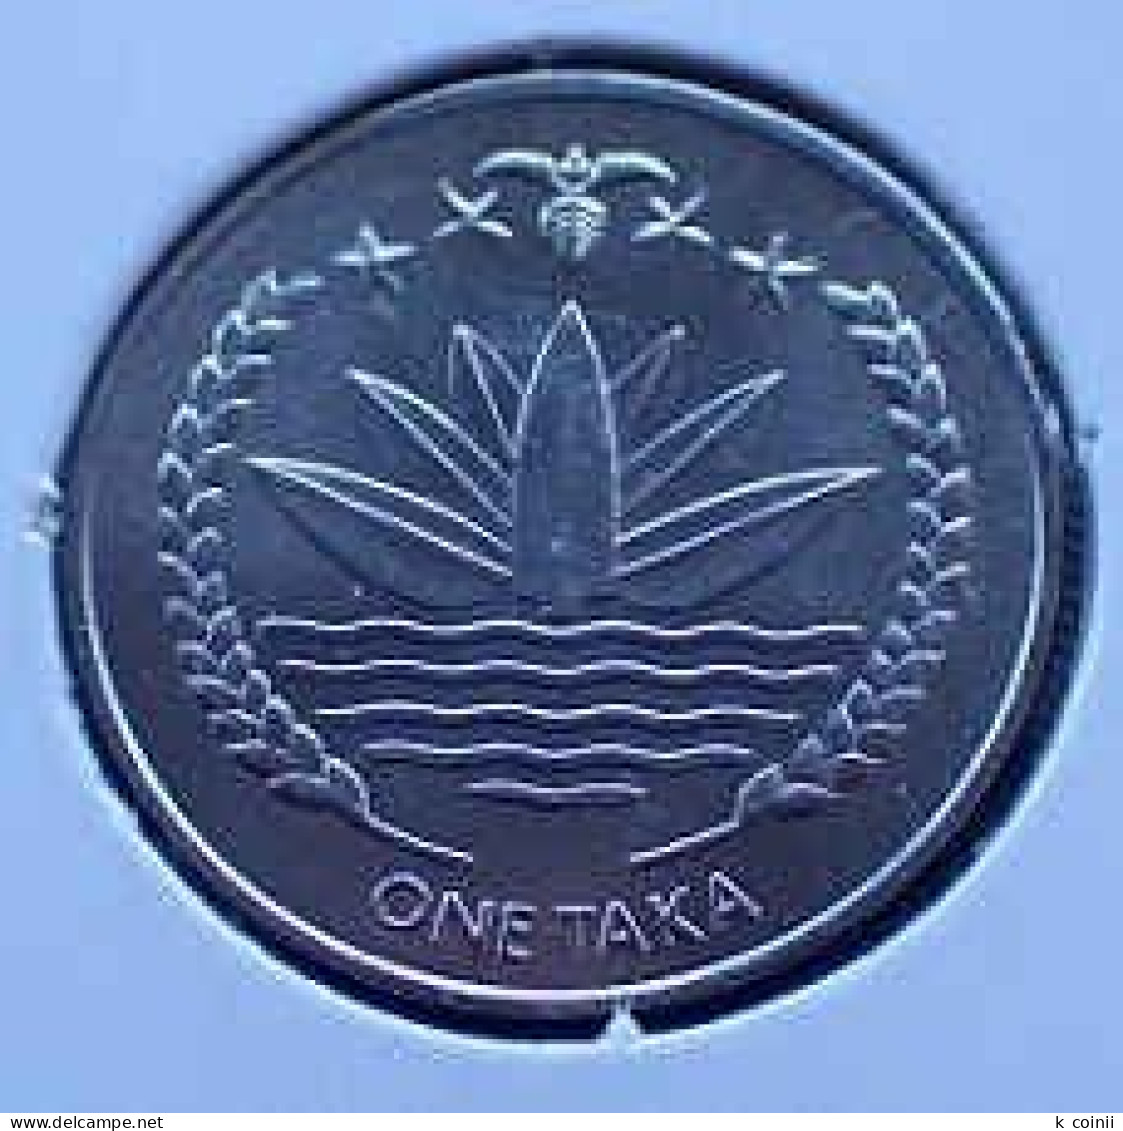 Bangladesh Set 3 Coins 2010 - Bangladesch